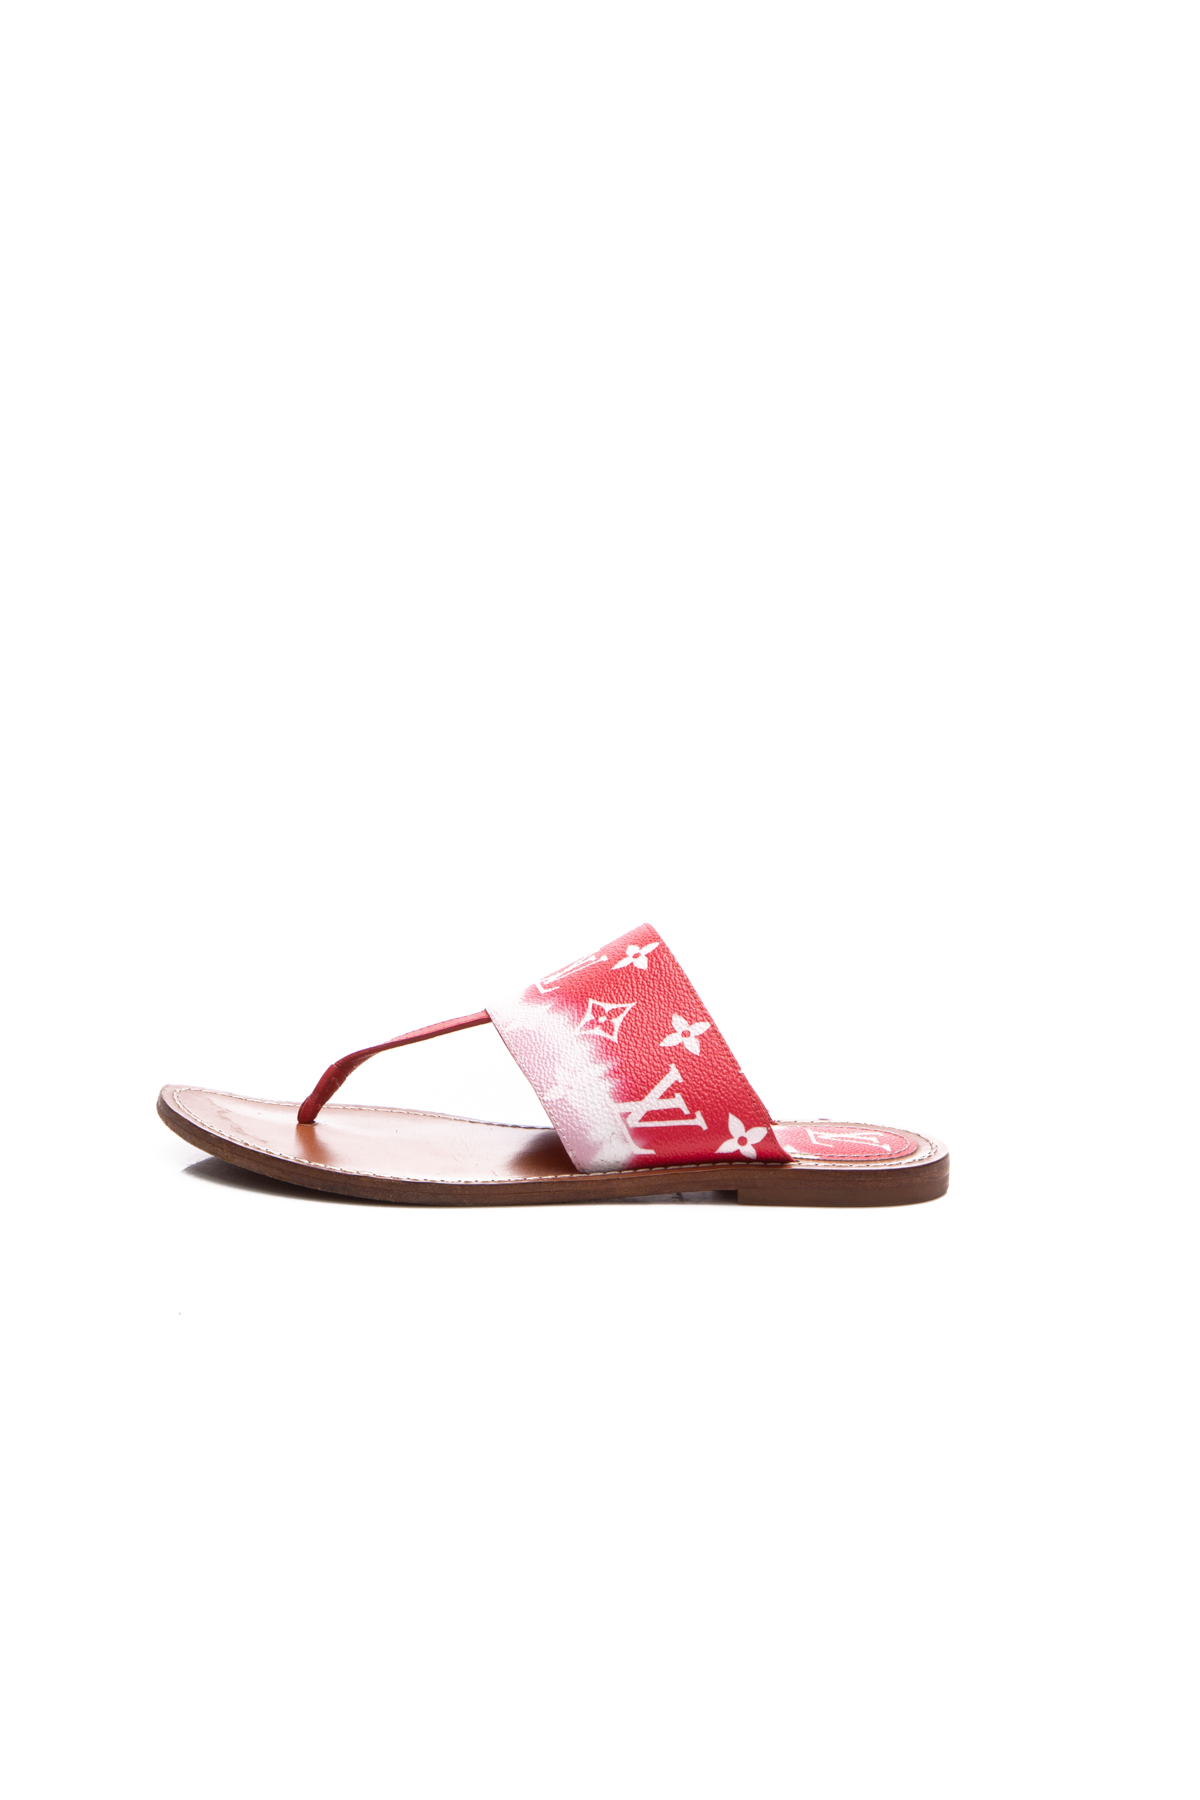 Louis Vuitton Escale Palma Sandals - Size 38